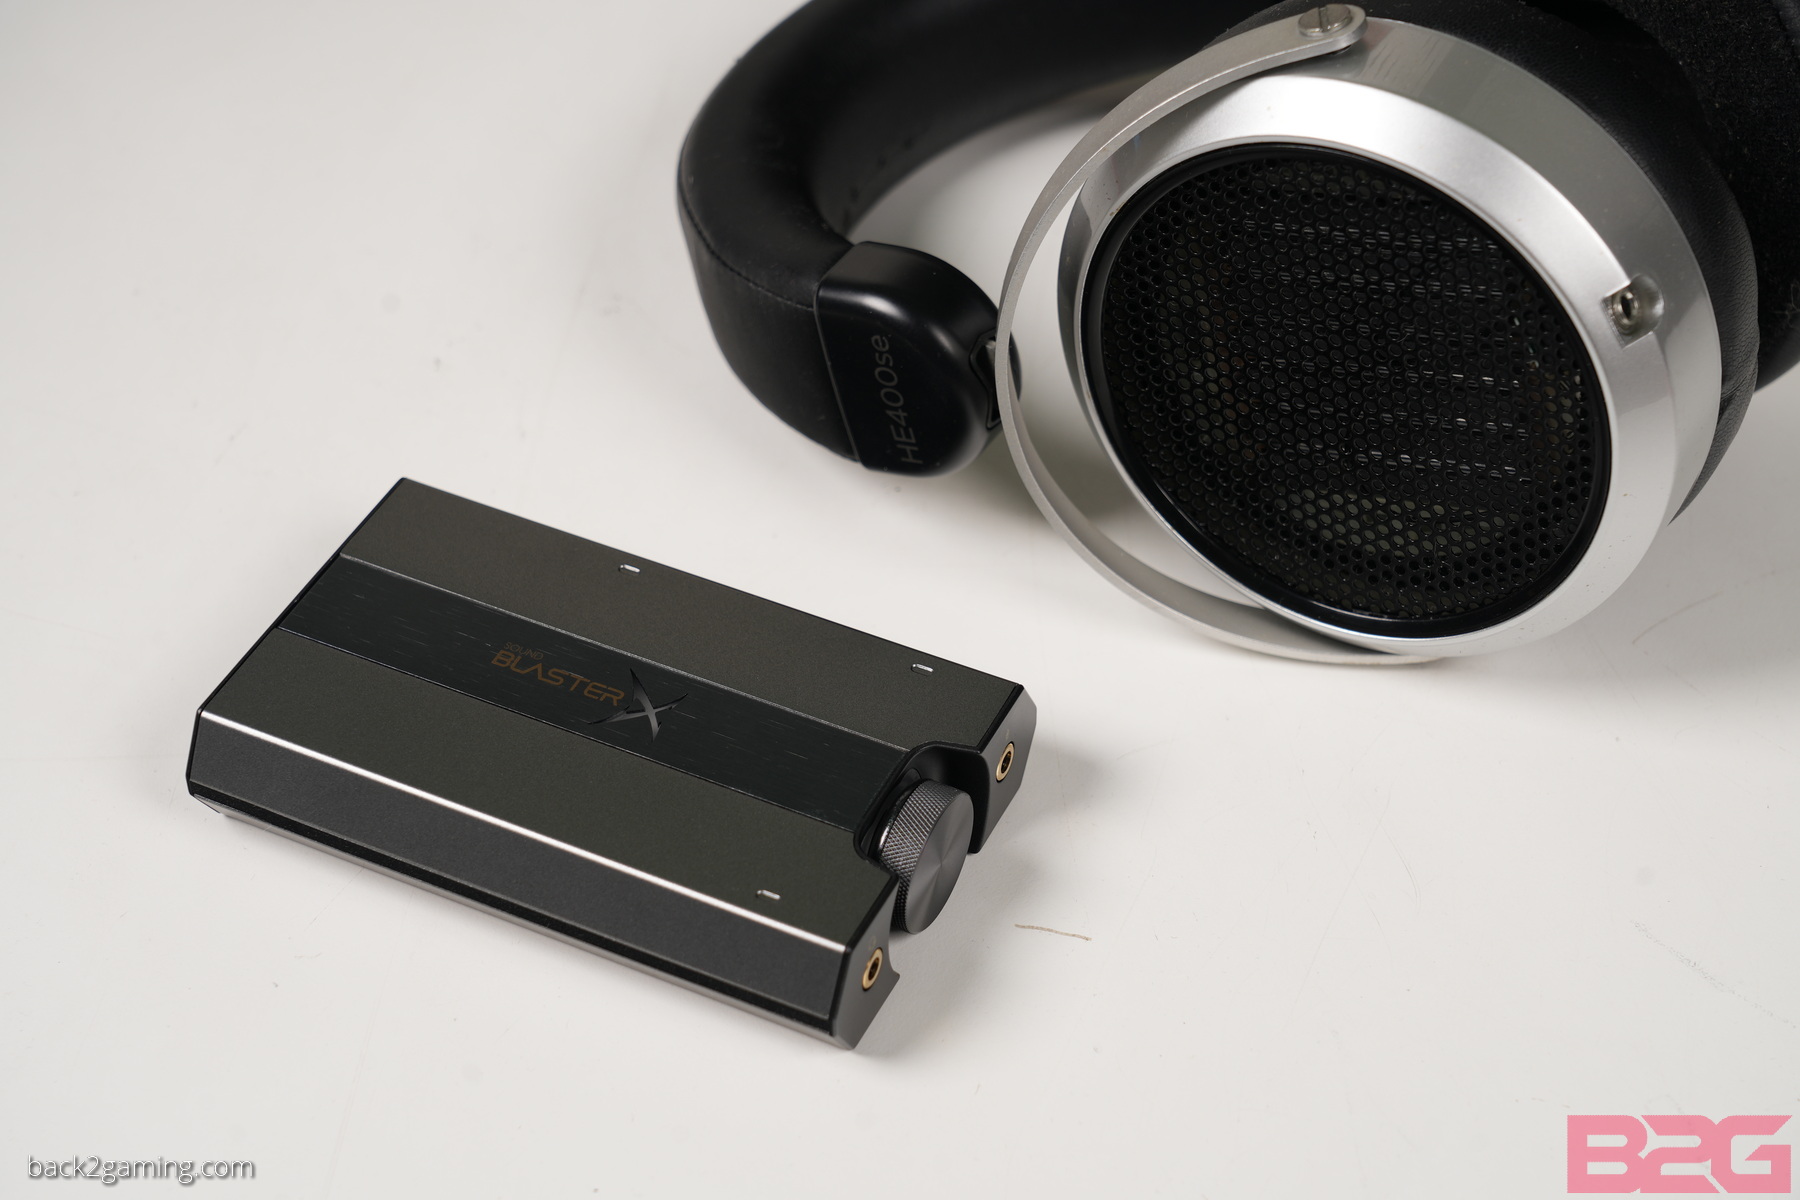 Creative Soundblasterx G6 External Dac Amp Review